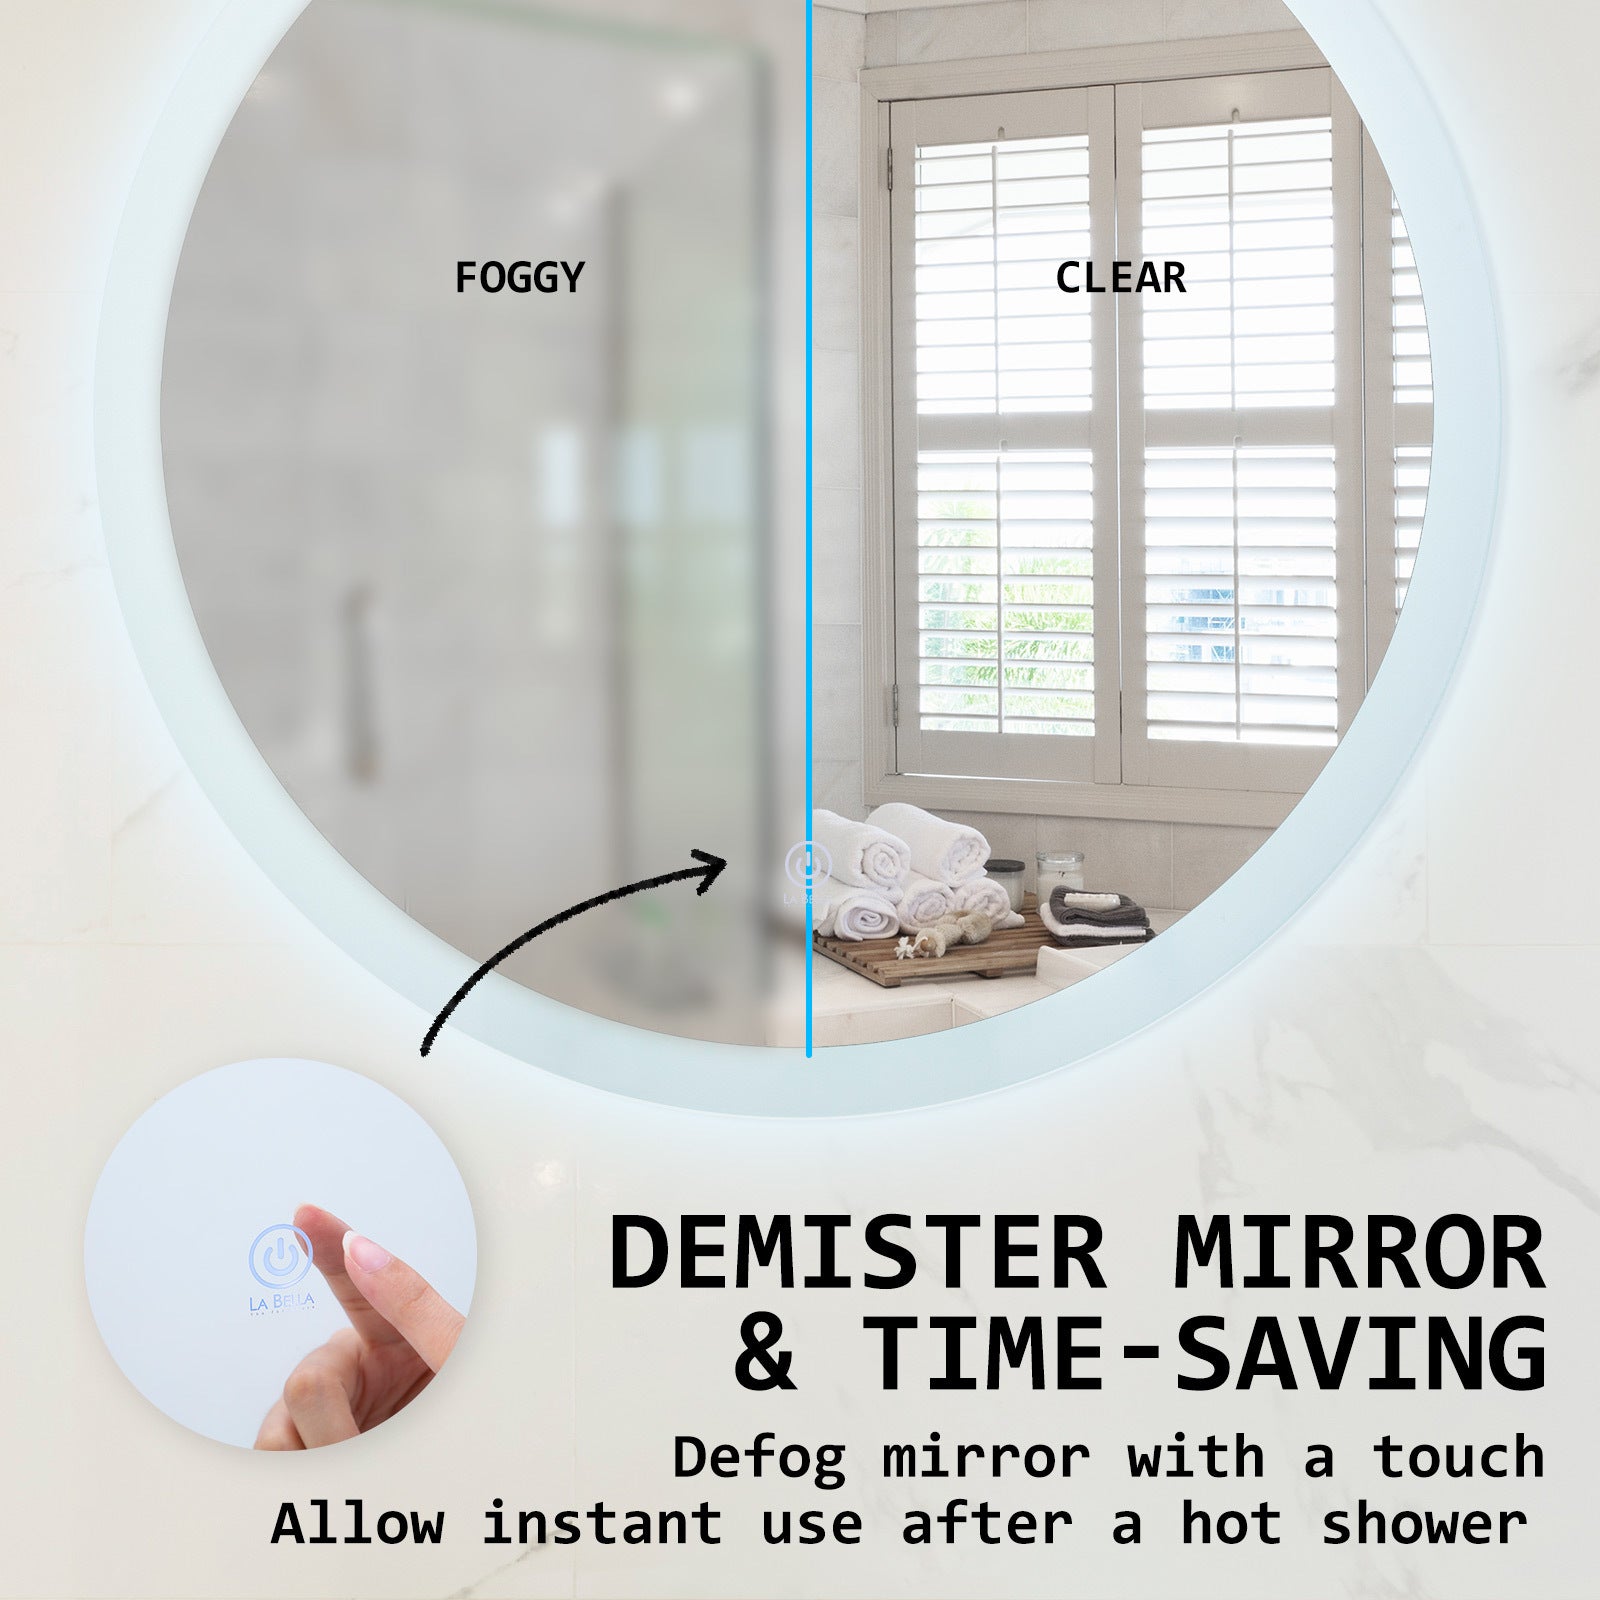 LED Wall Mirror Round Anti-Fog Bathroom 70cm